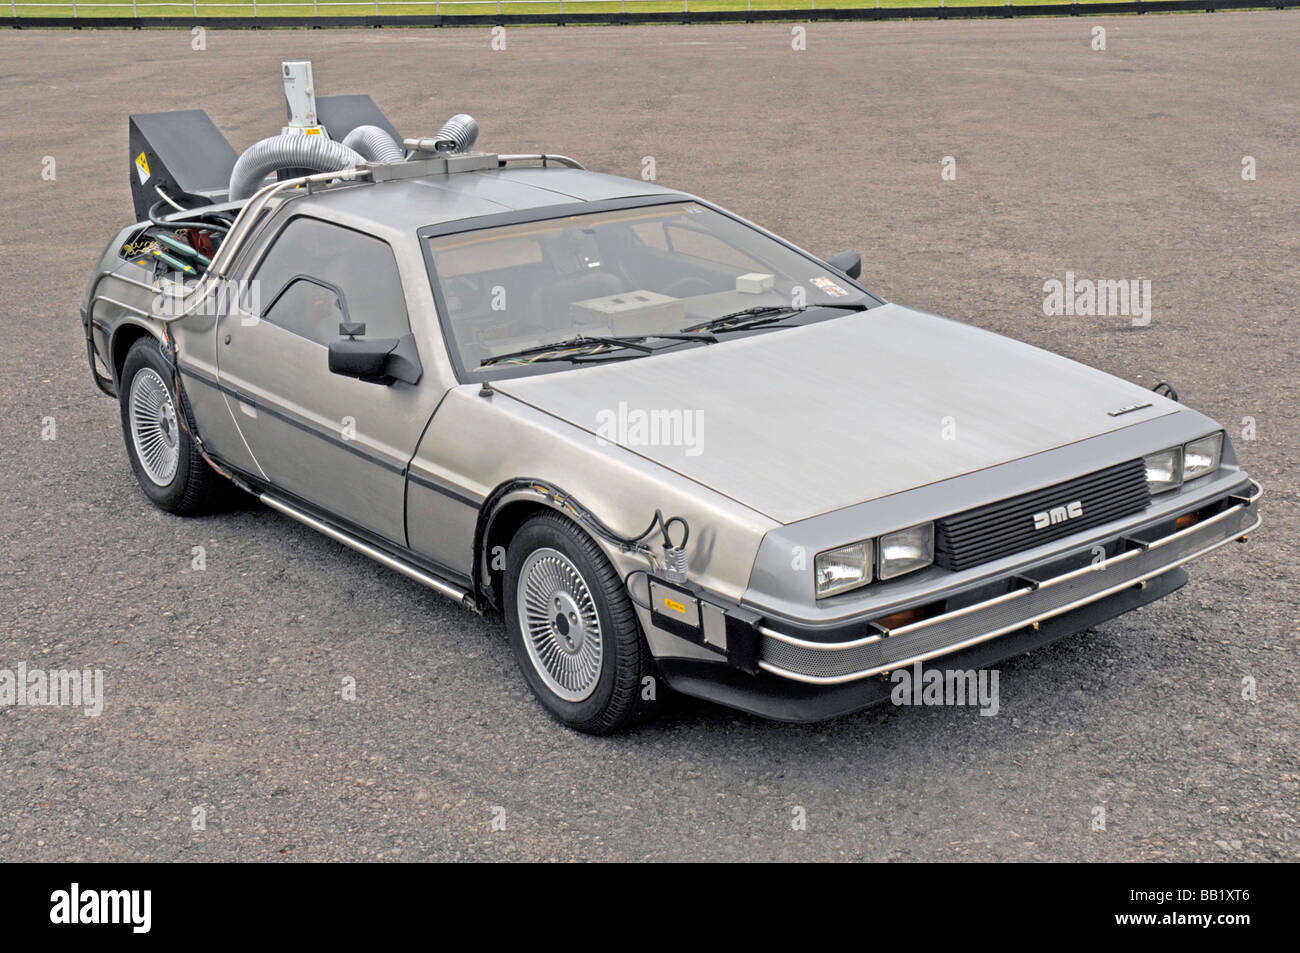 1981 DeLorean Back to the Future film car replica Stock Photo